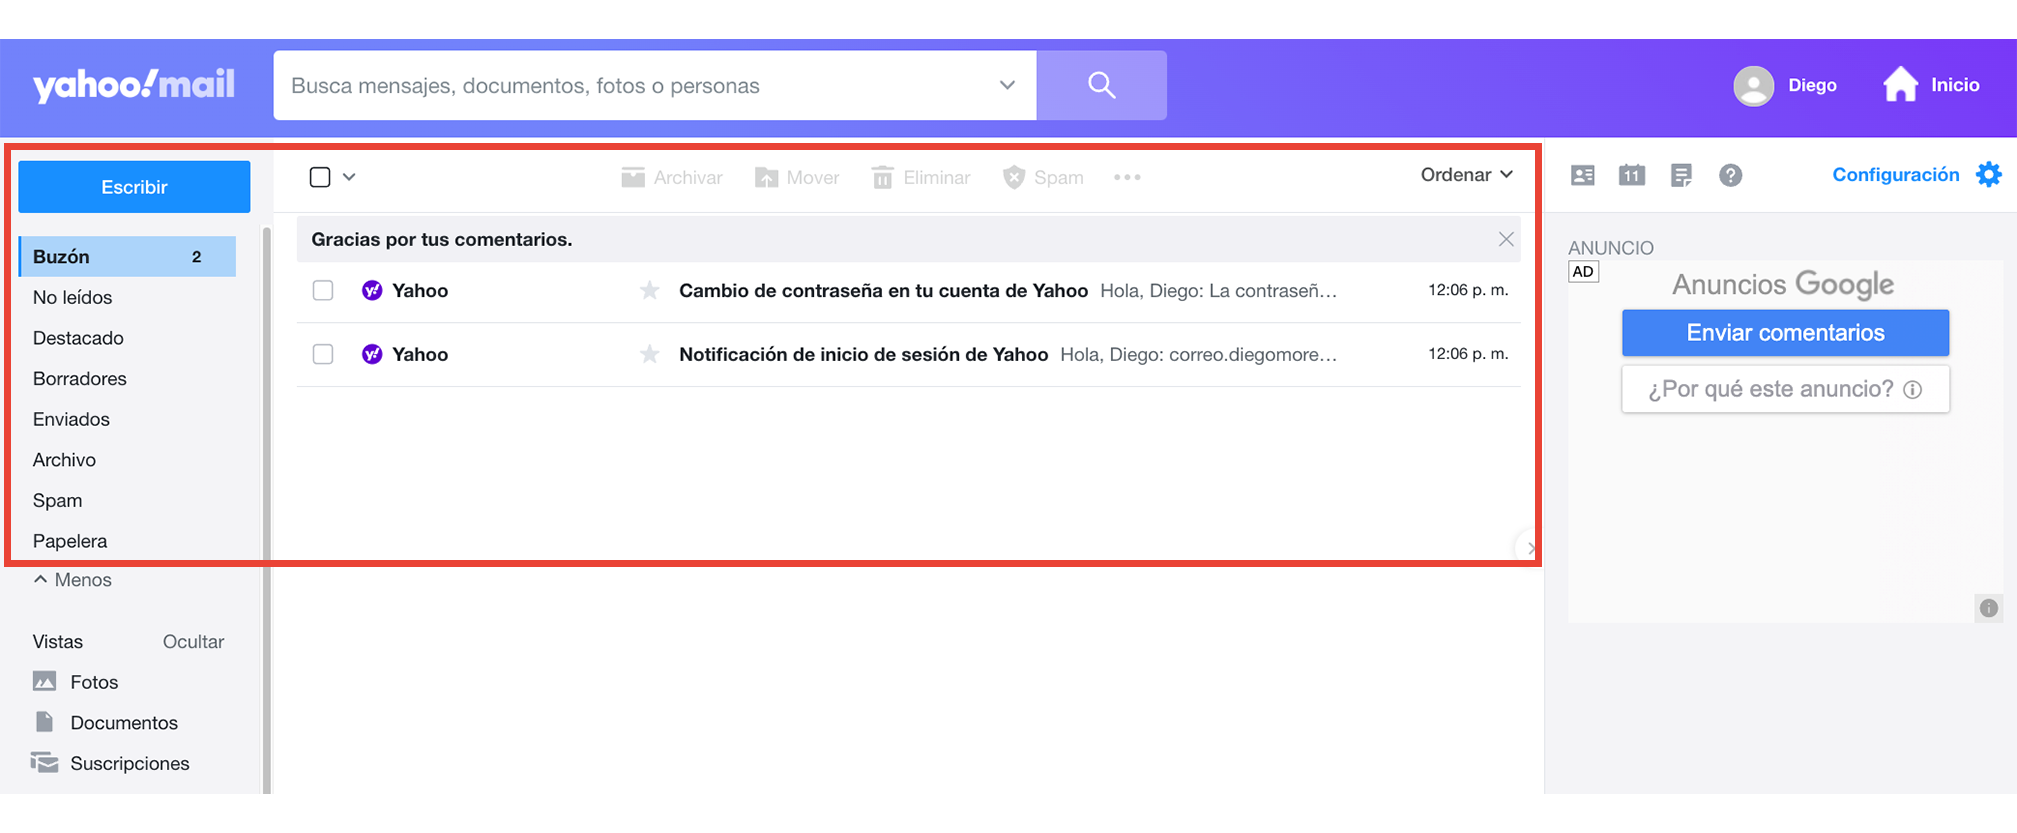 Para organizar tus mensajes, Yahoo! te ofrece una forma rápida y sencilla para crear carpetas y clasificar tus mensajes como quieras, ya sea por nombre, grupos, etc.